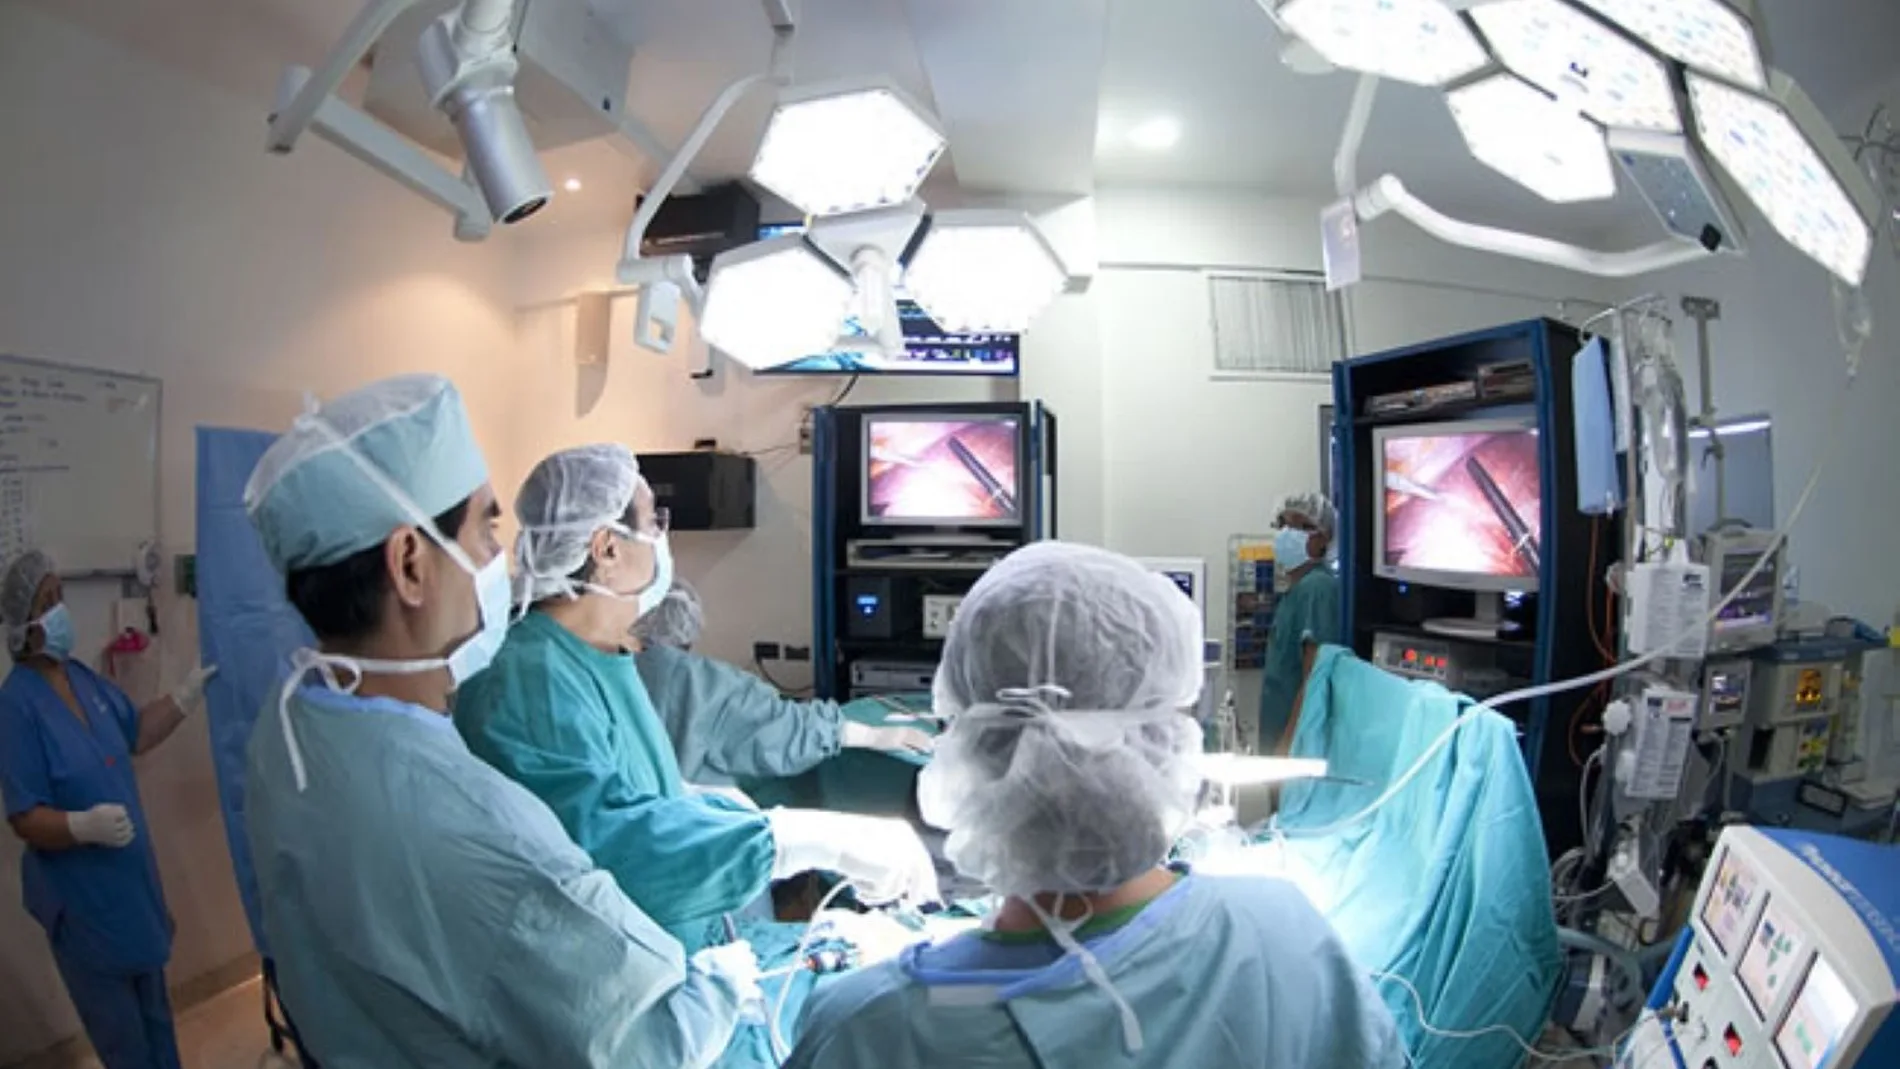 El sistema permitirá a los cirujanos operar con mayor precisión